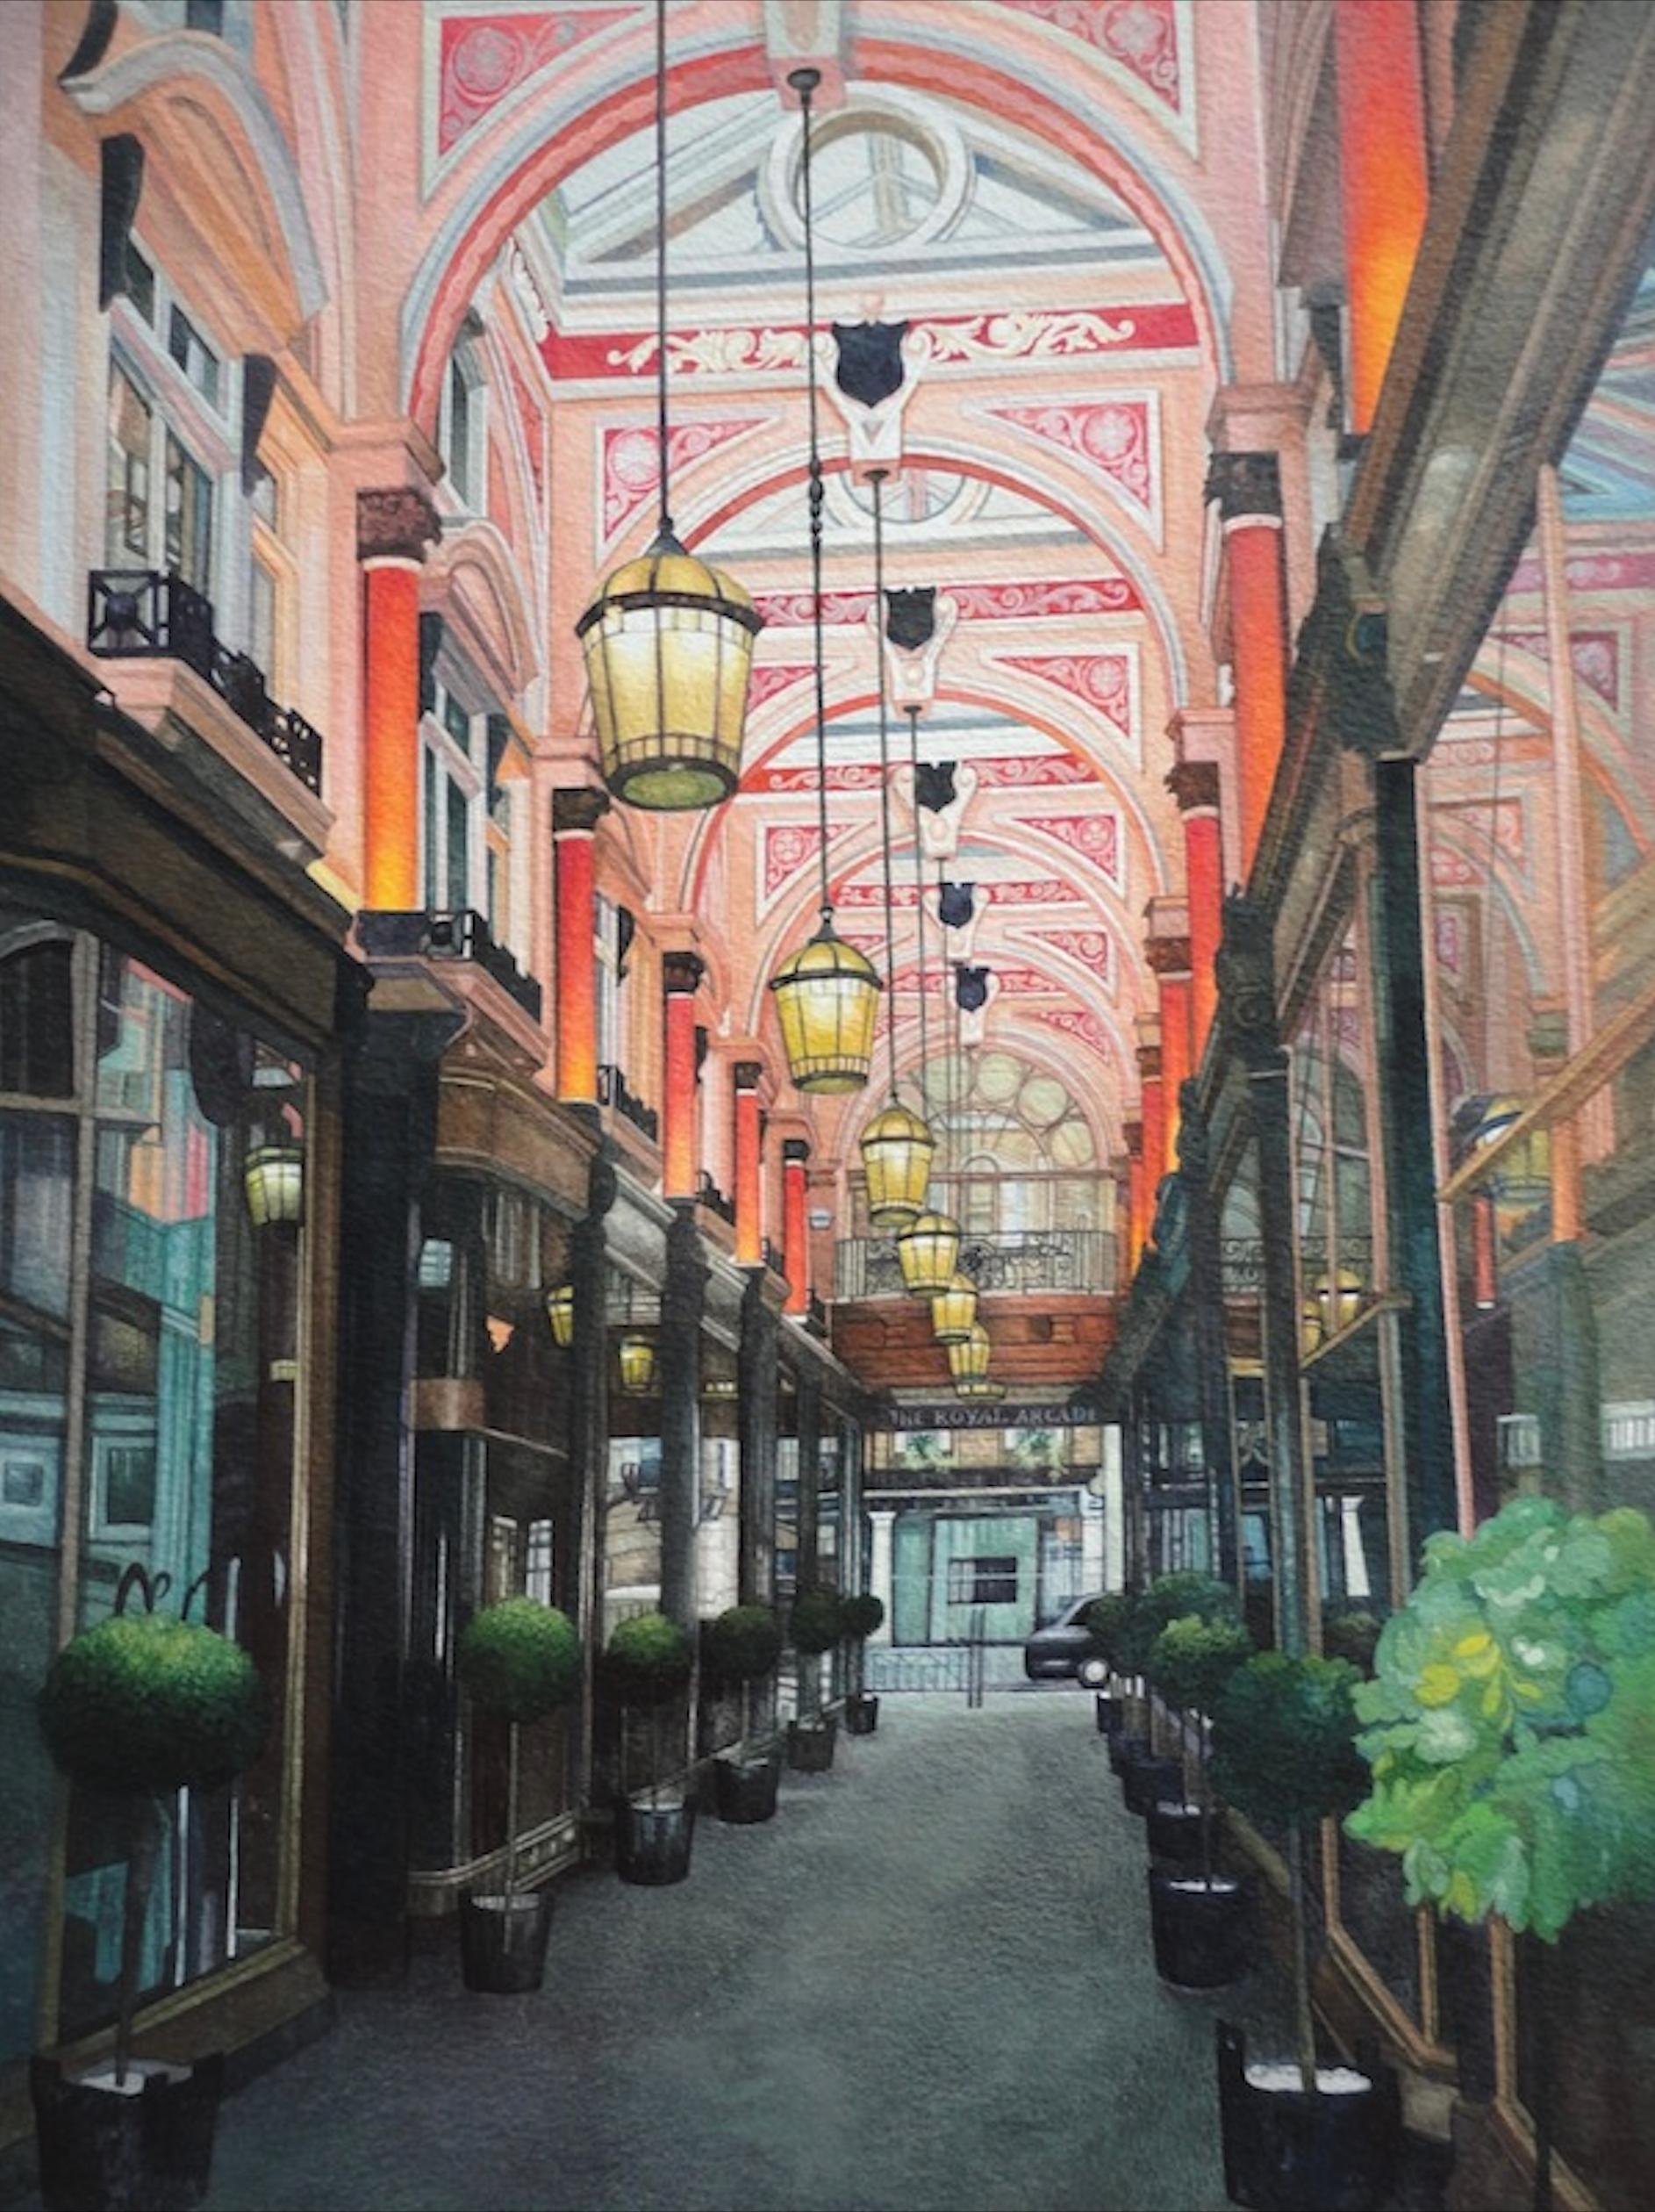 Elena Baranoff Landscape Art – The Royal Arcade, ein stilvoller viktorianischer Londoner Connection